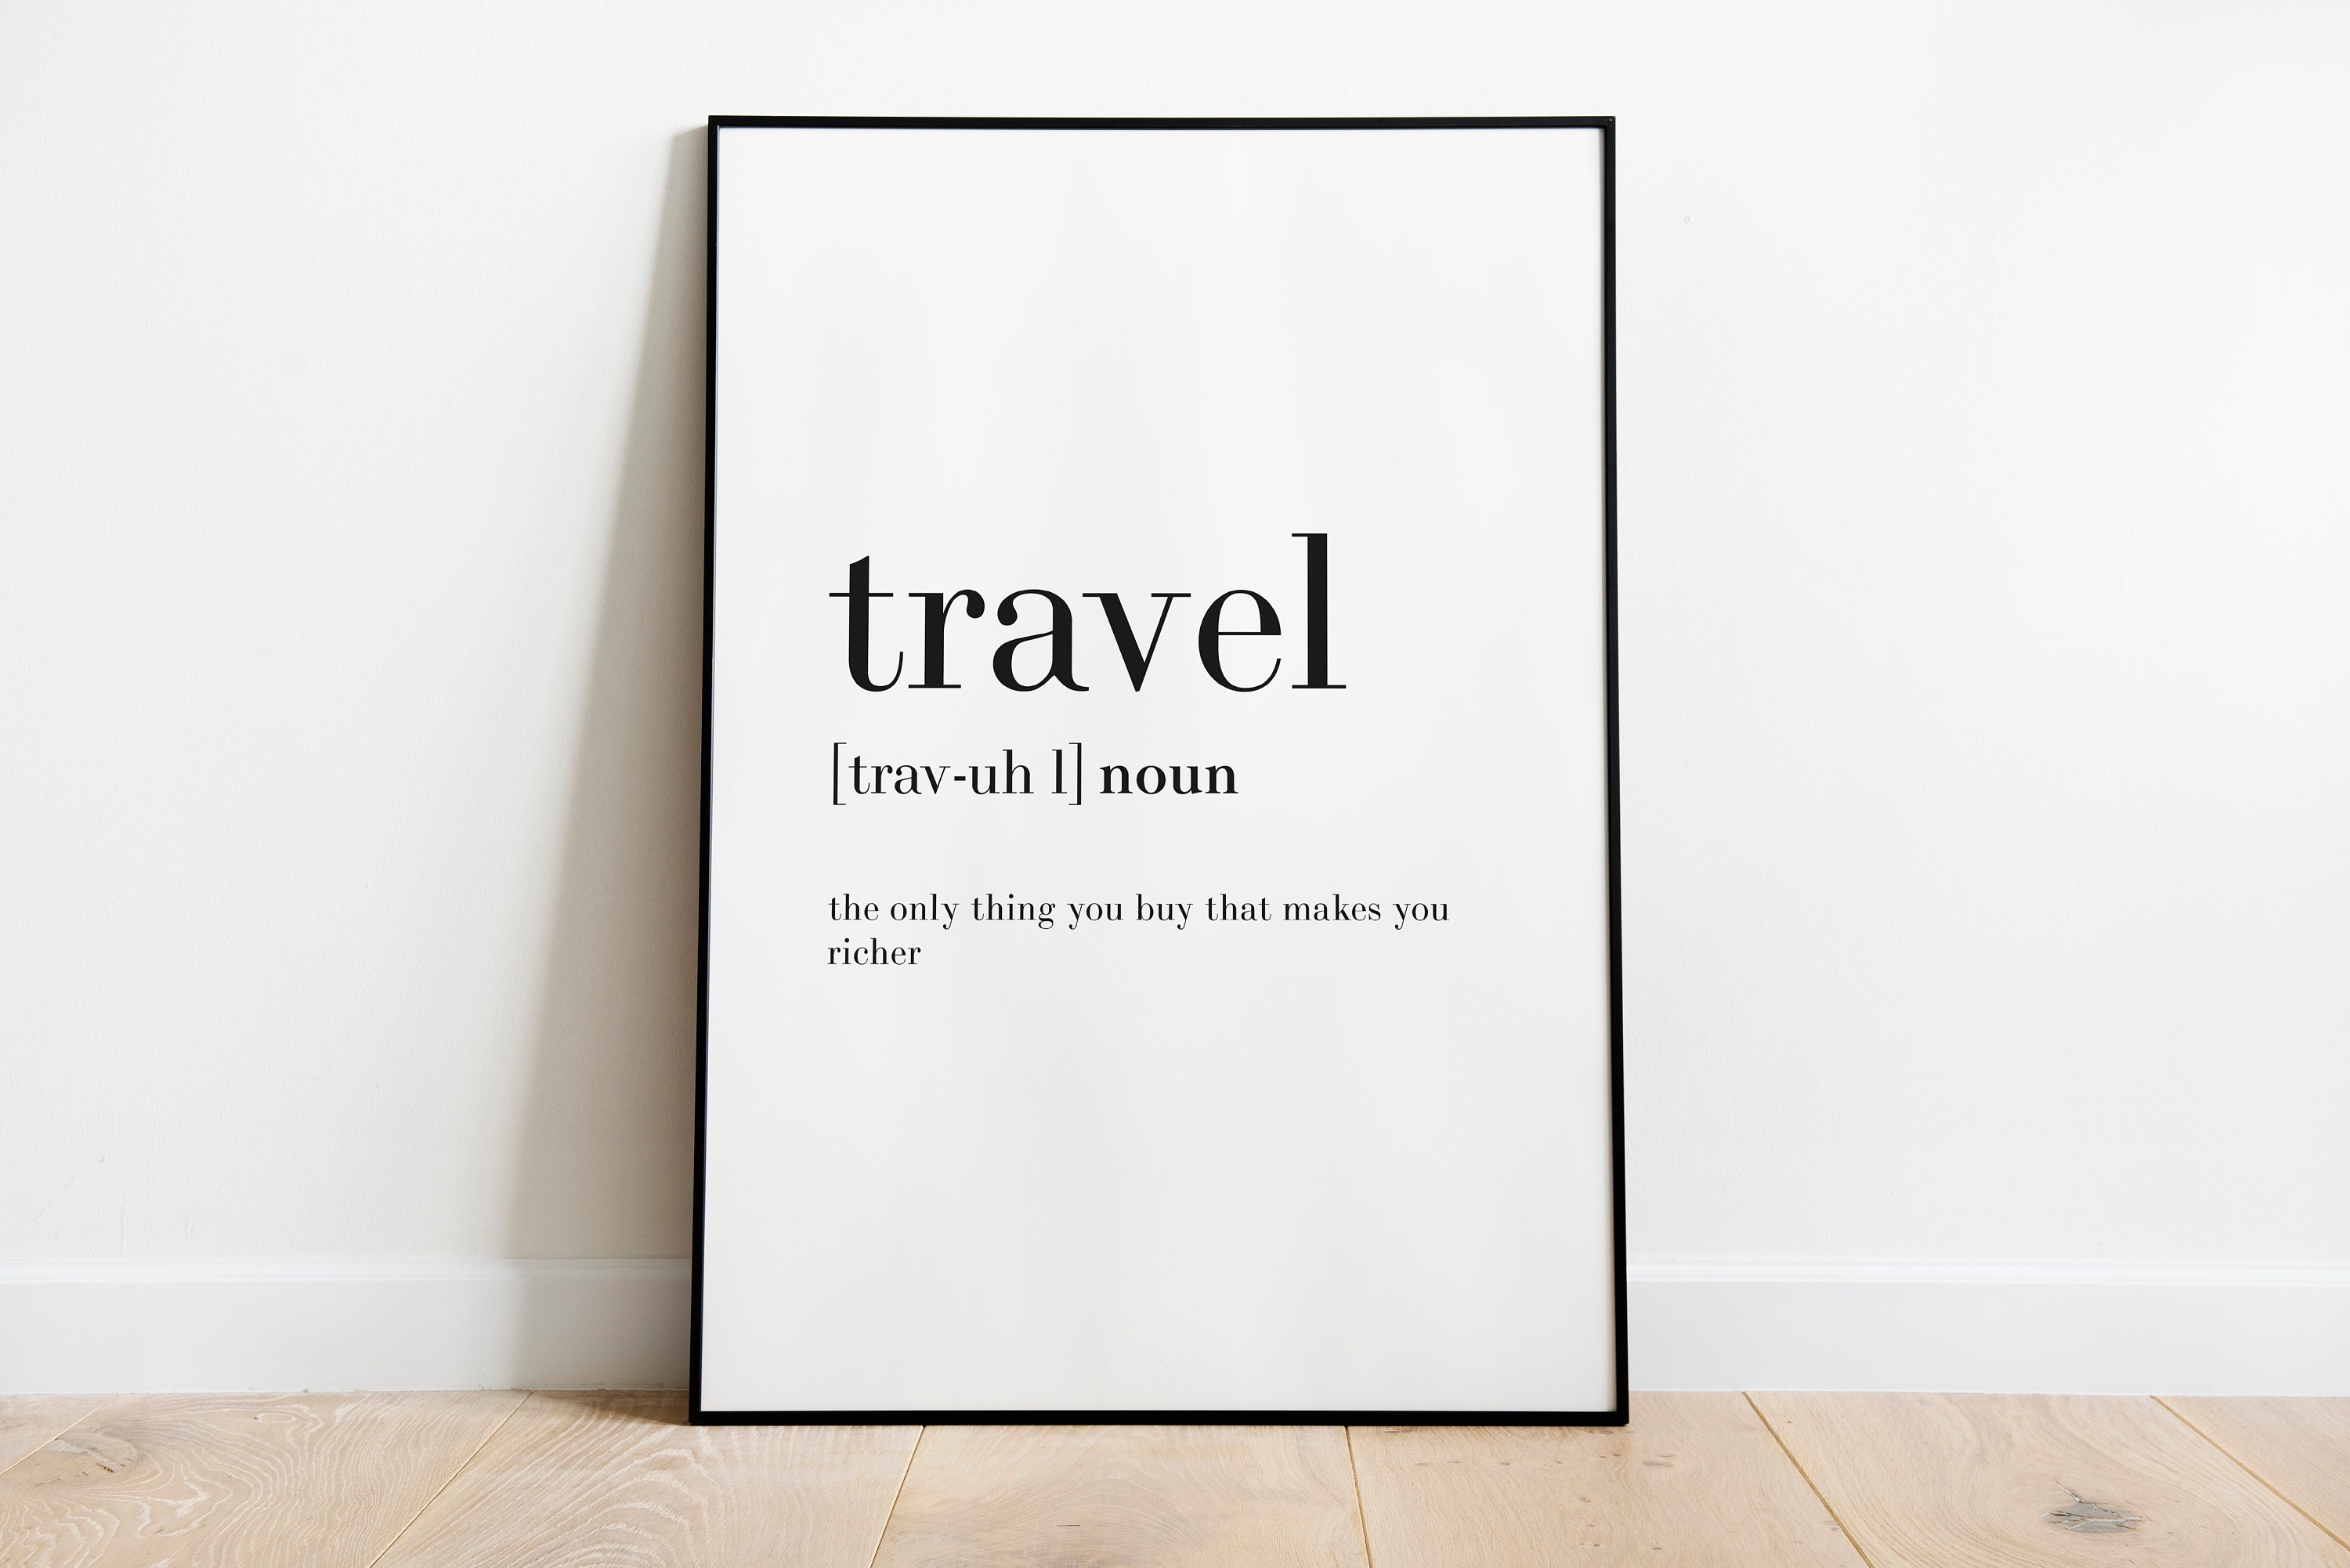 to travel noun